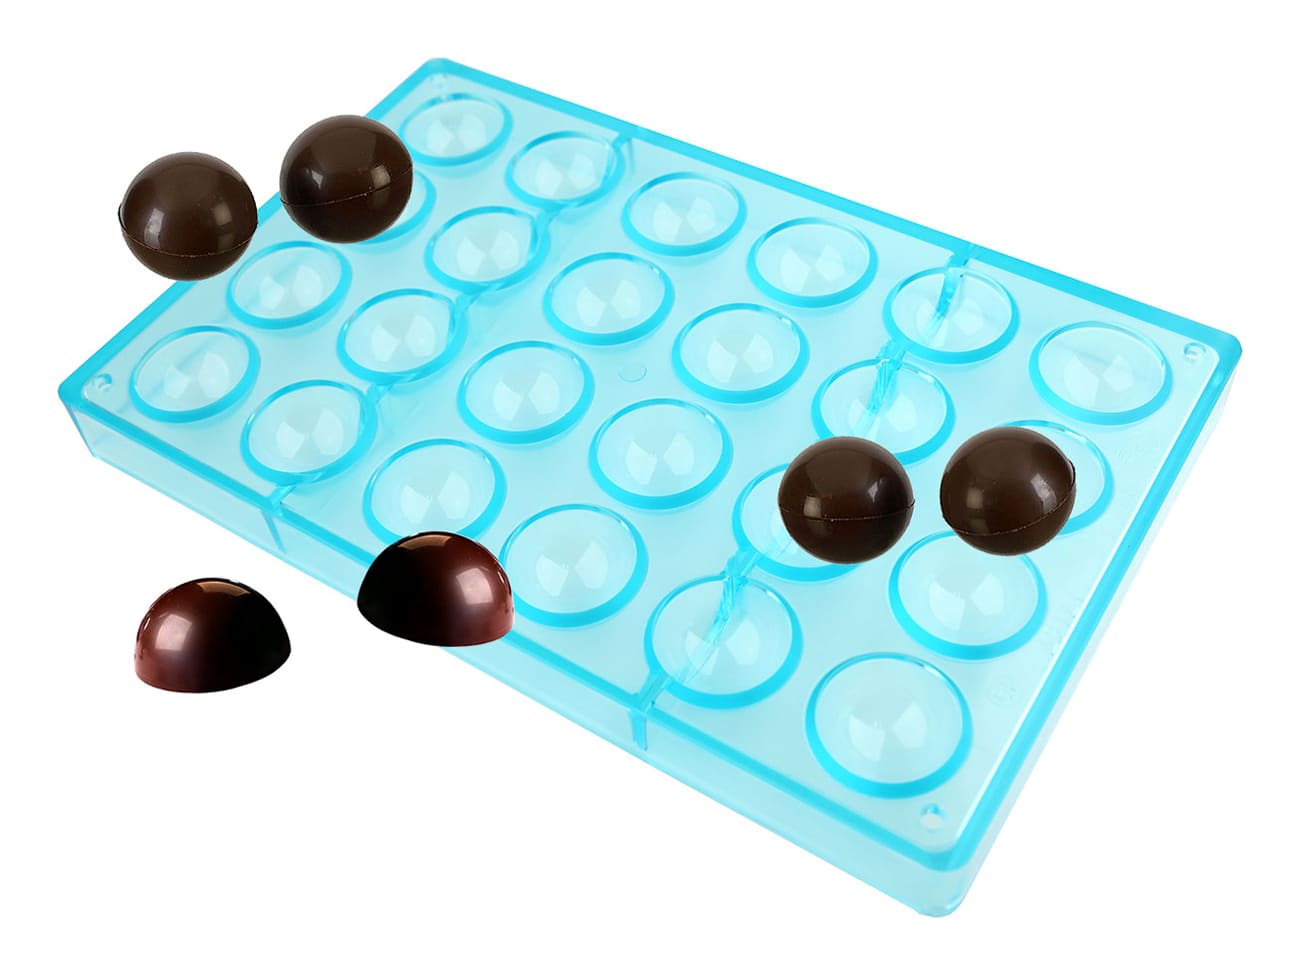 Moule à chocolat en polycarbonate 1/2 sphère Ø6cm